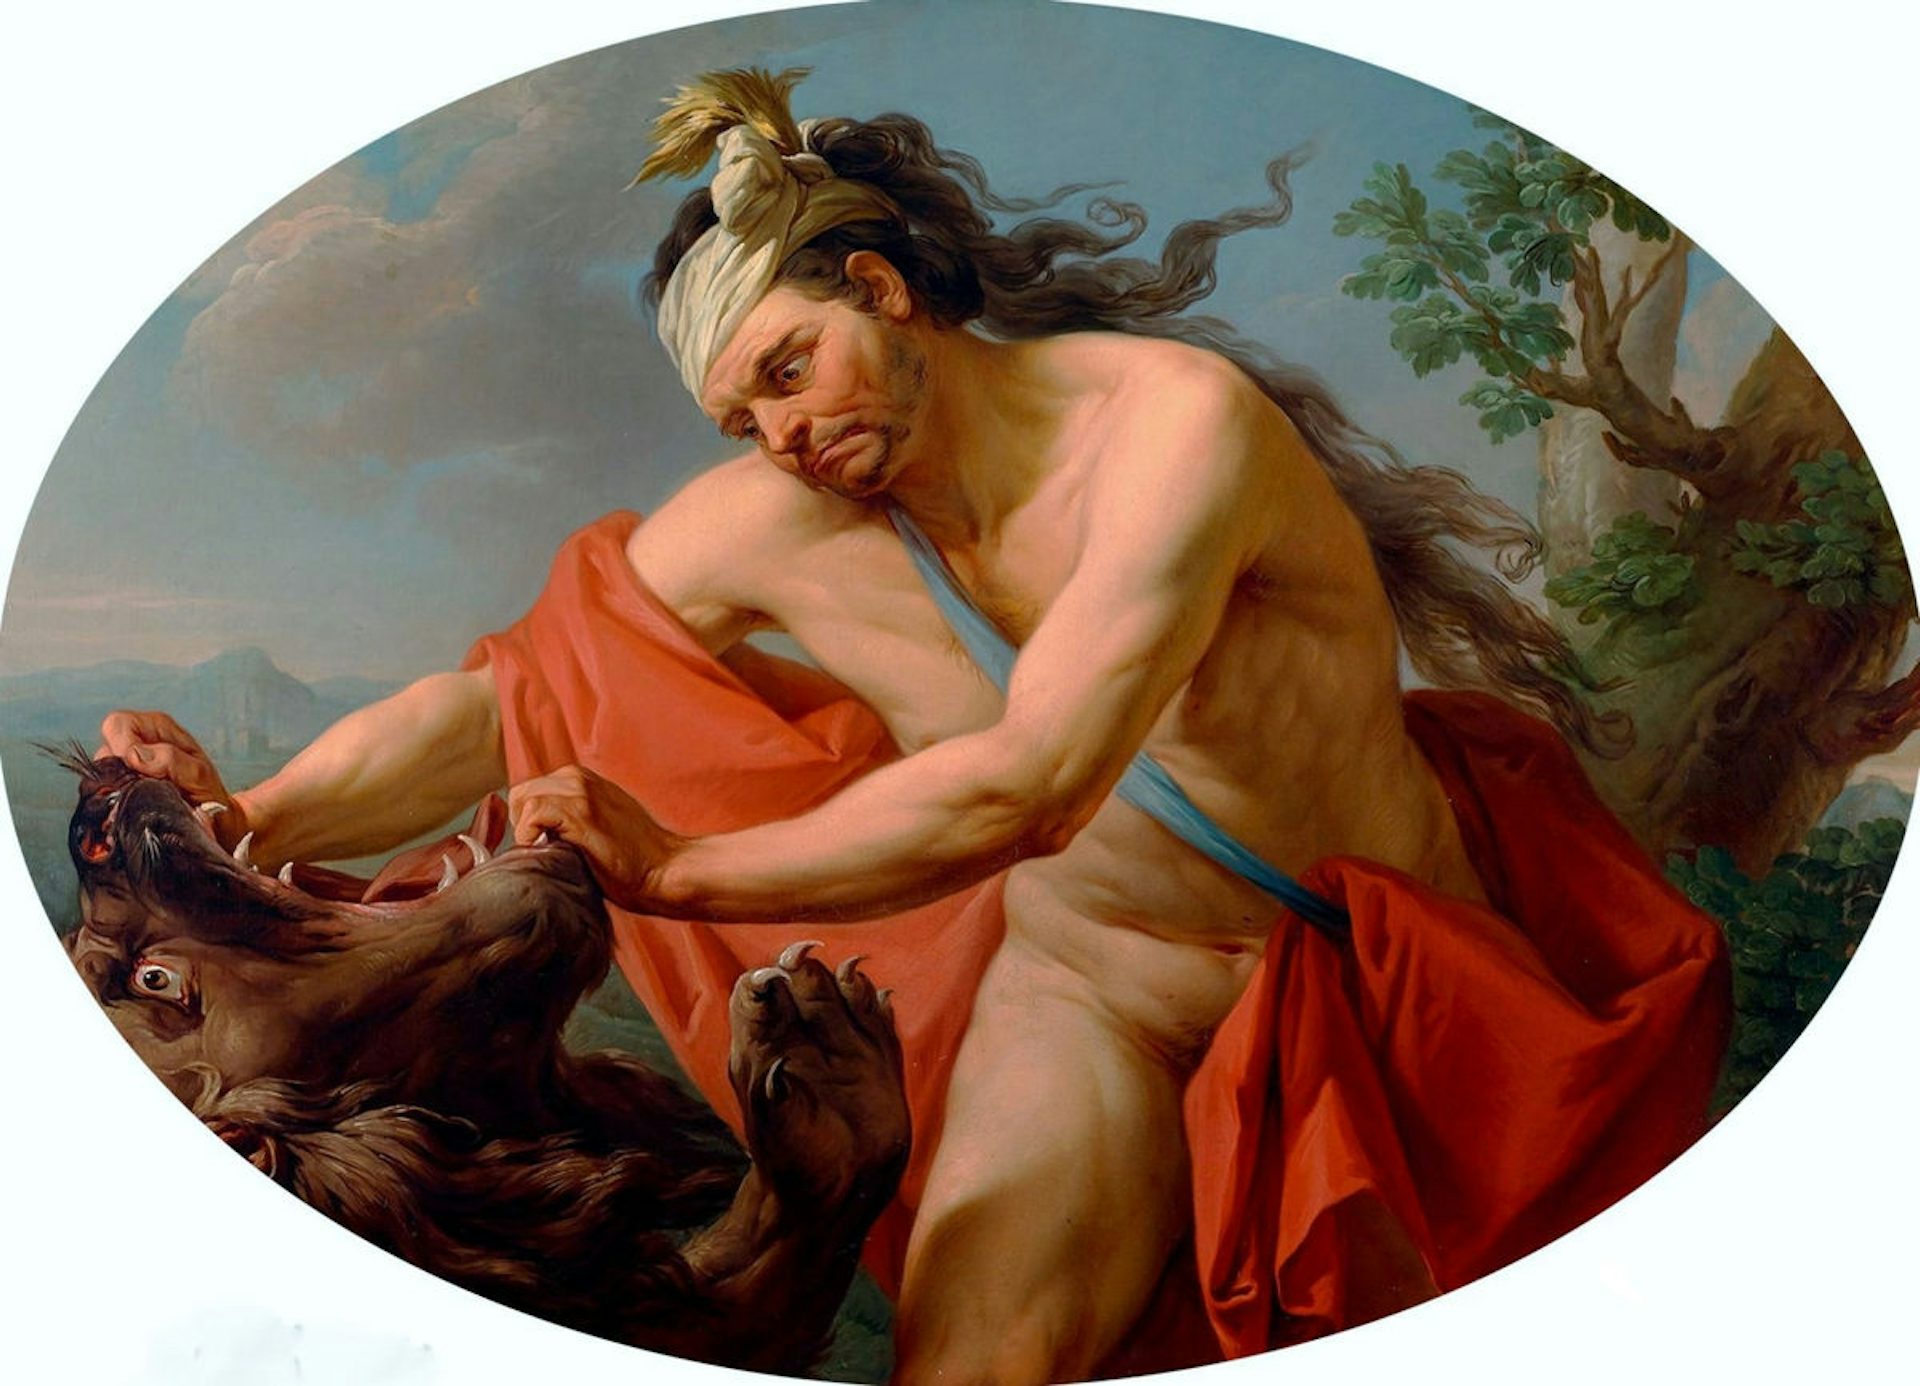 Hercules and the Nemean Lion by Marcello Bacciarelli, 1776-77